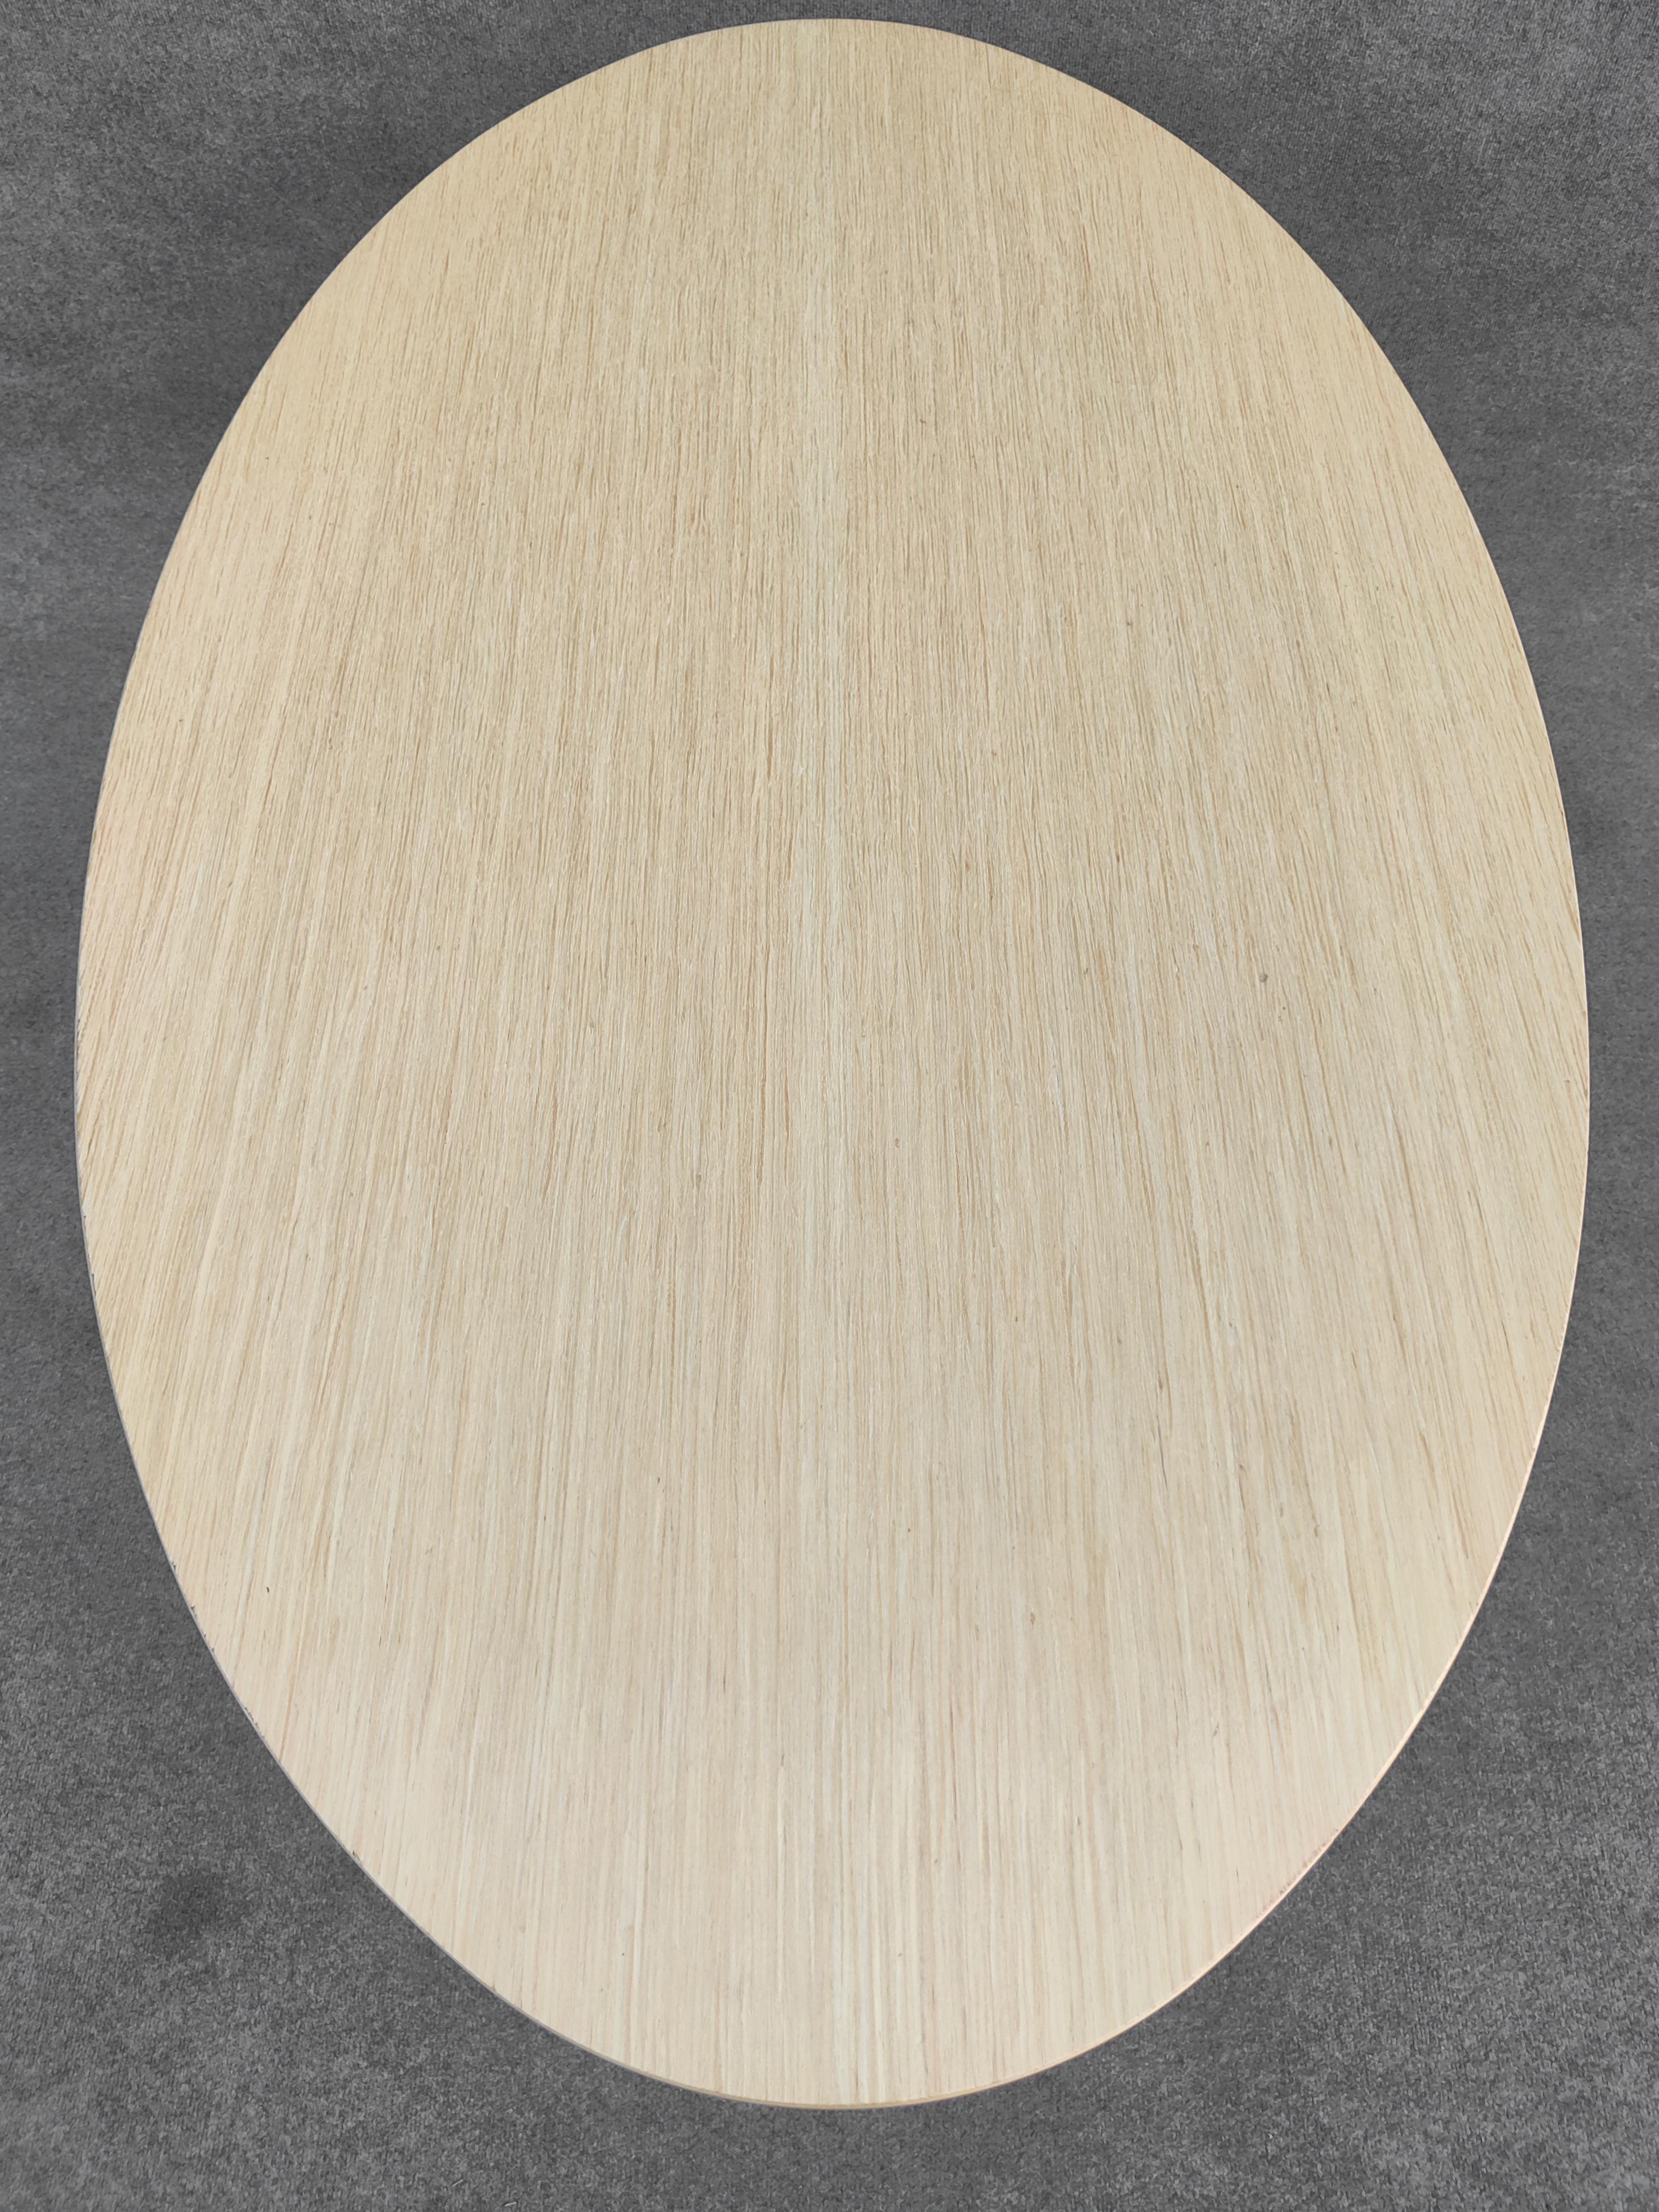 Américain Table de salle à manger Tulipe ovale Eero Saarinen Knoll 66x38 po. avec plateau en bois blond et base noire